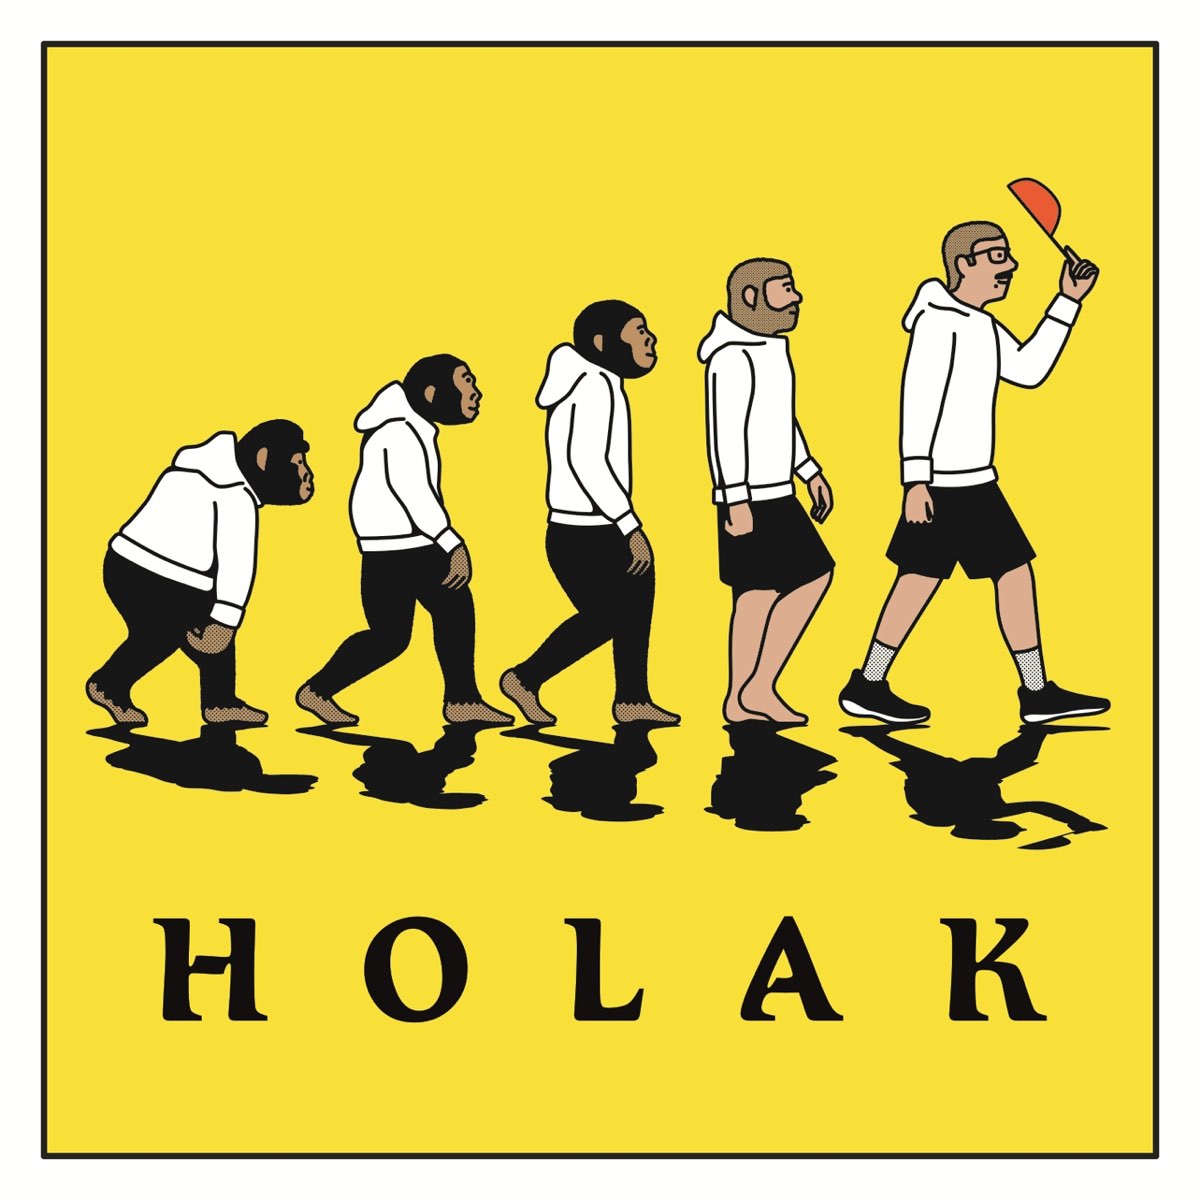 Bluza (feat. Jan-rapowanie, Solar) - Single by Holak on Apple Music